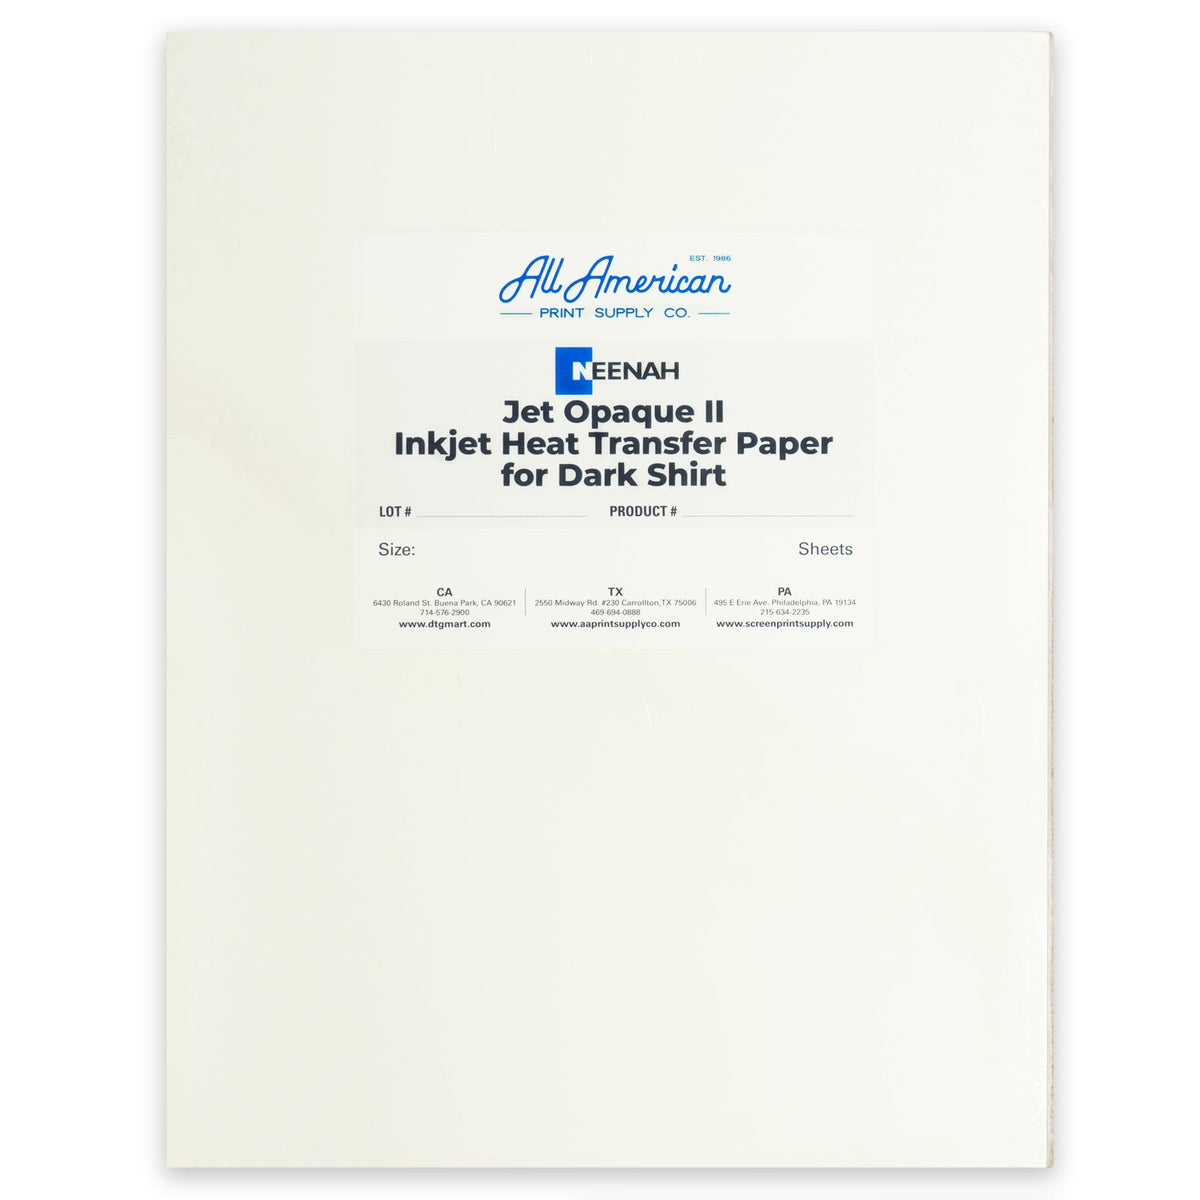 Neenah Jet Opaque II Inkjet Heat Transfer Paper